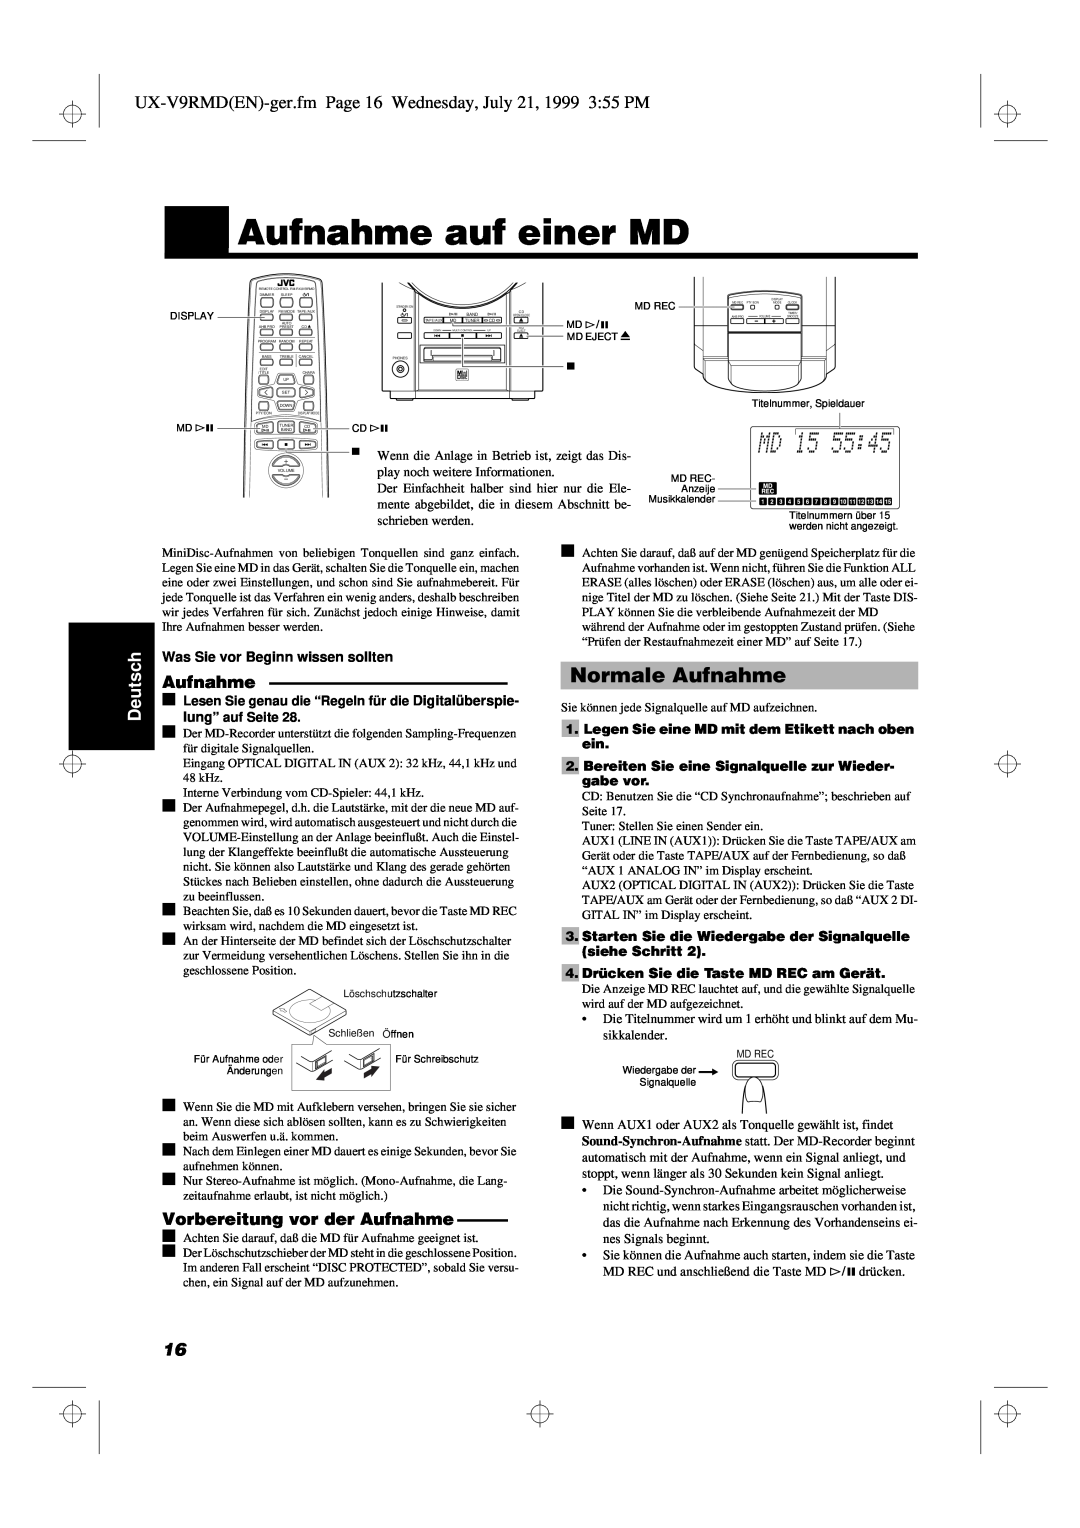 JVC UX-V9RMD manual Aufnahme auf einer MD, Normale Aufnahme, Vorbereitung vor der Aufnahme, Deutsch 